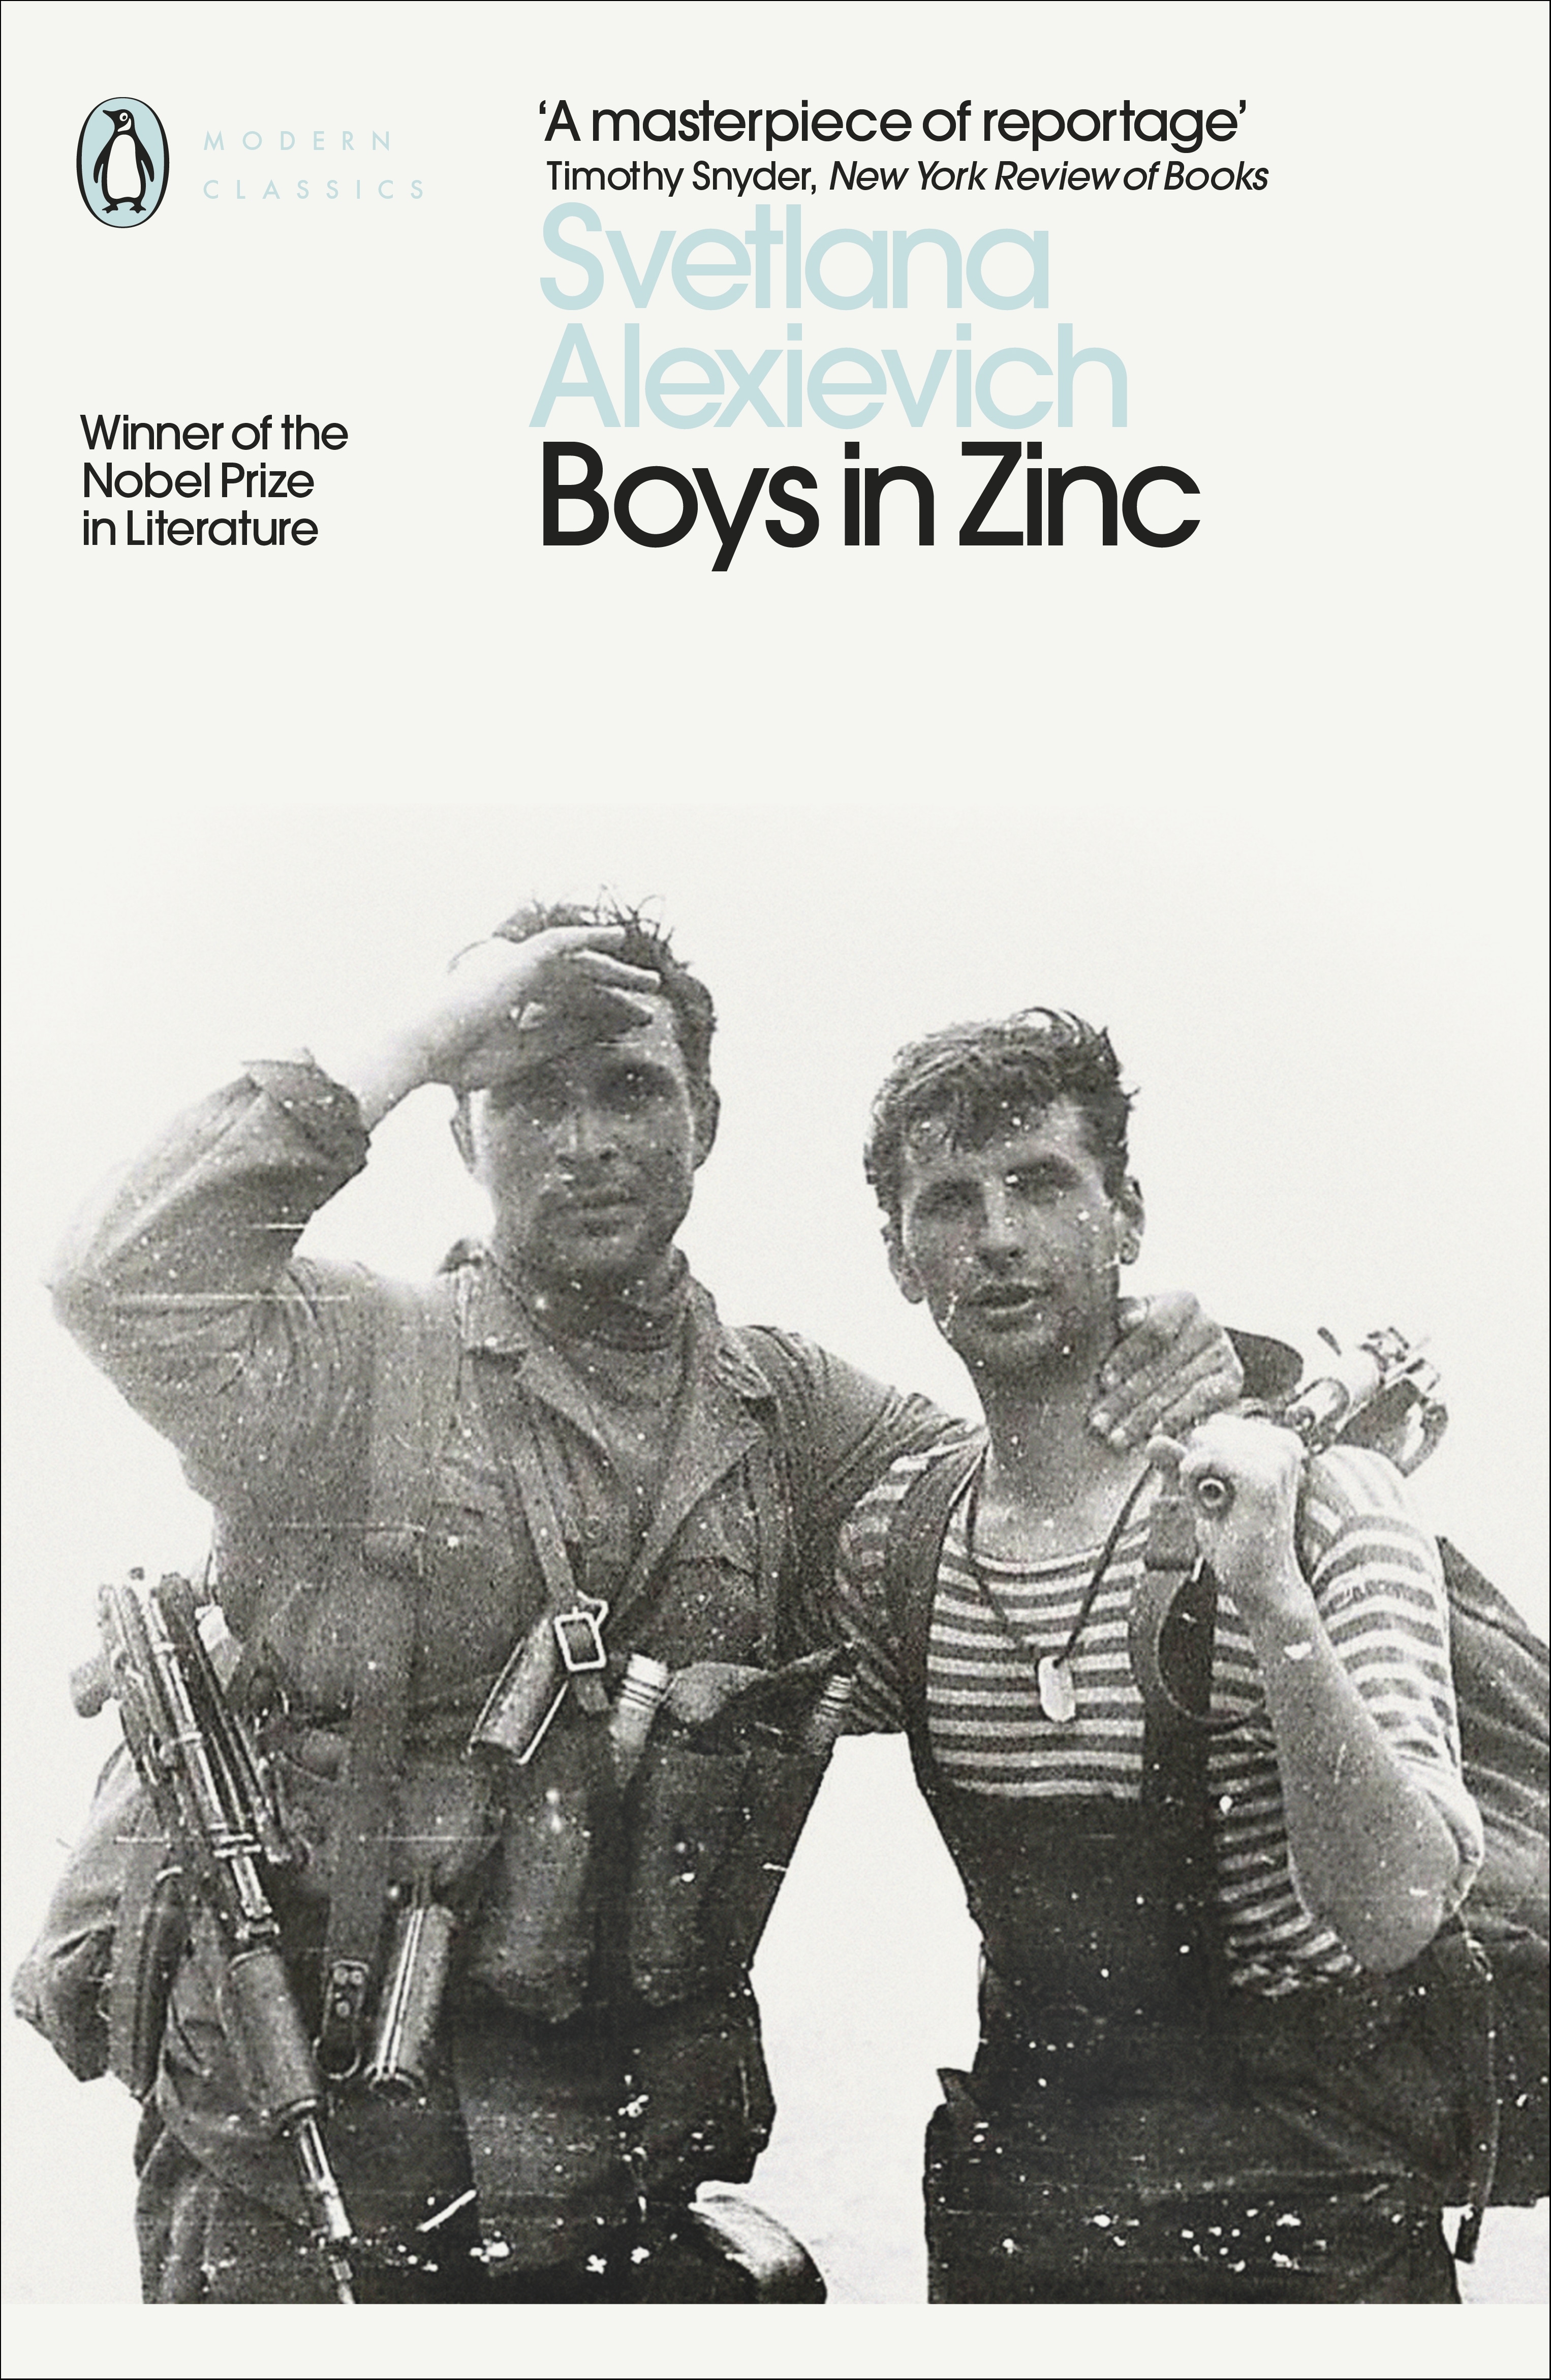 Book “Boys in Zinc” by Svetlana Alexievich — March 2, 2017